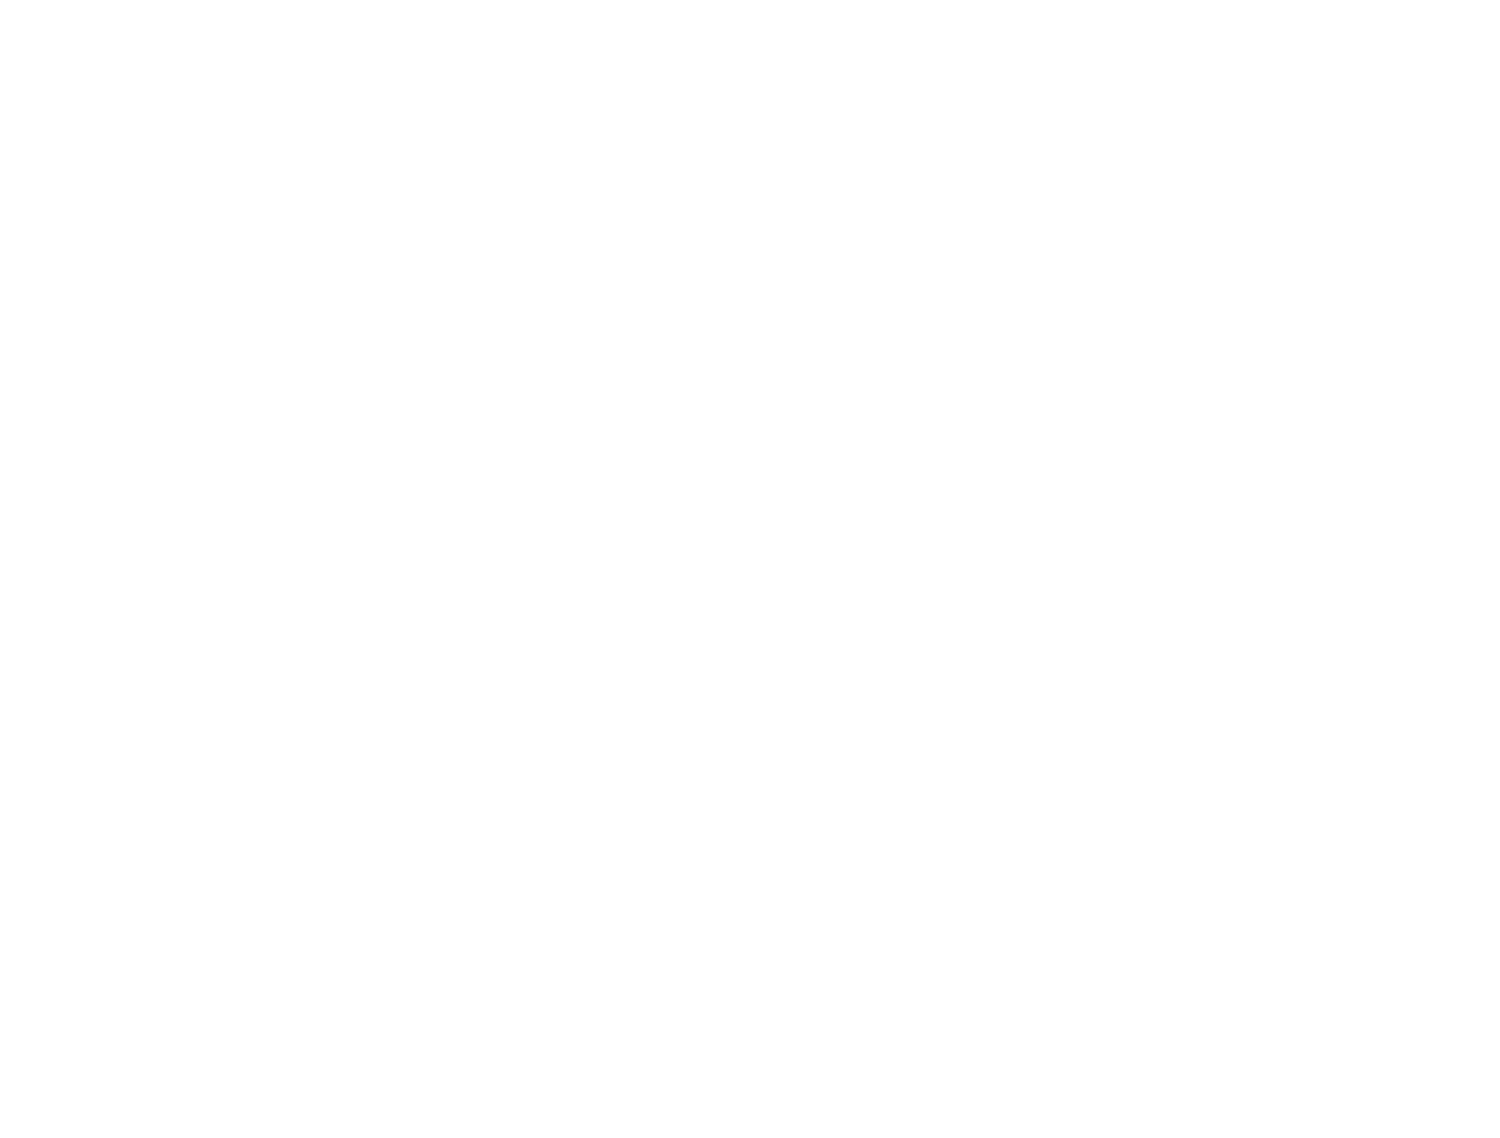 Charcoal BYOB